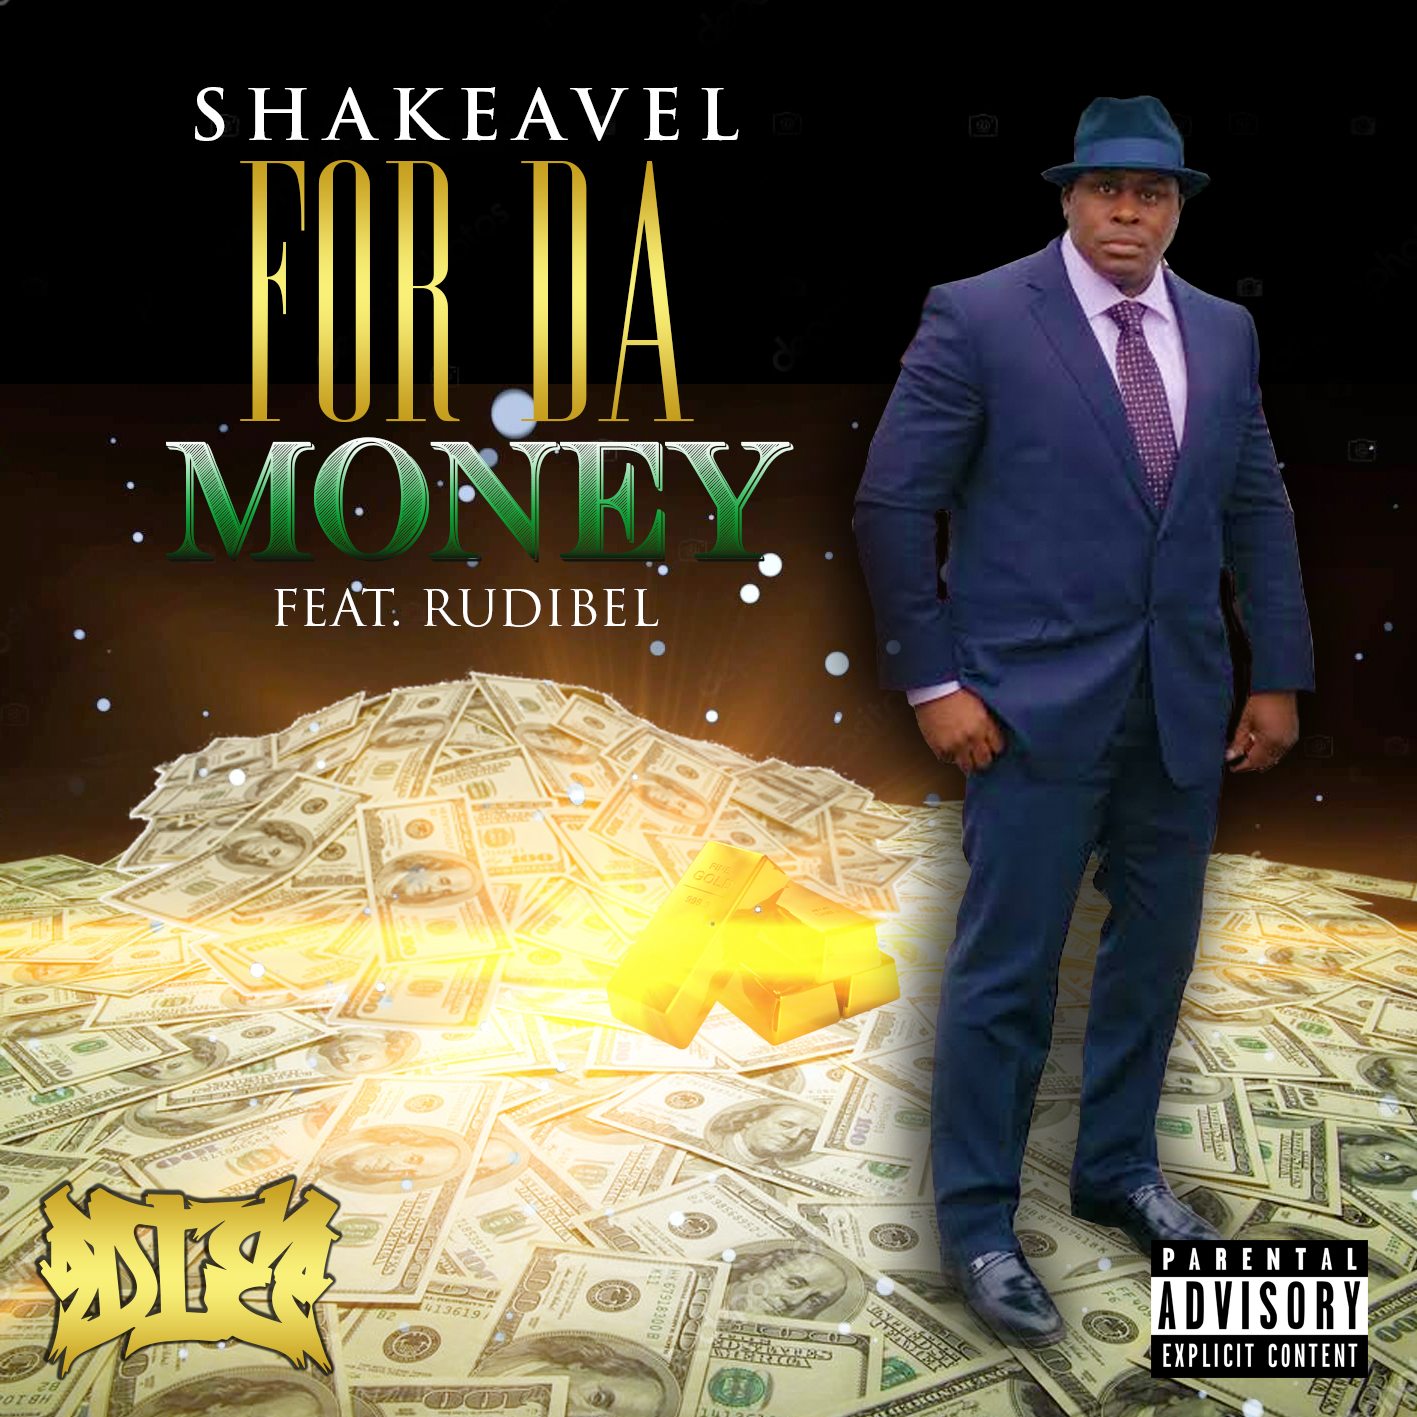 SHAKE-A-VEL FEAT. RUDIBEL “FOR DA MONEY” @shakeavel